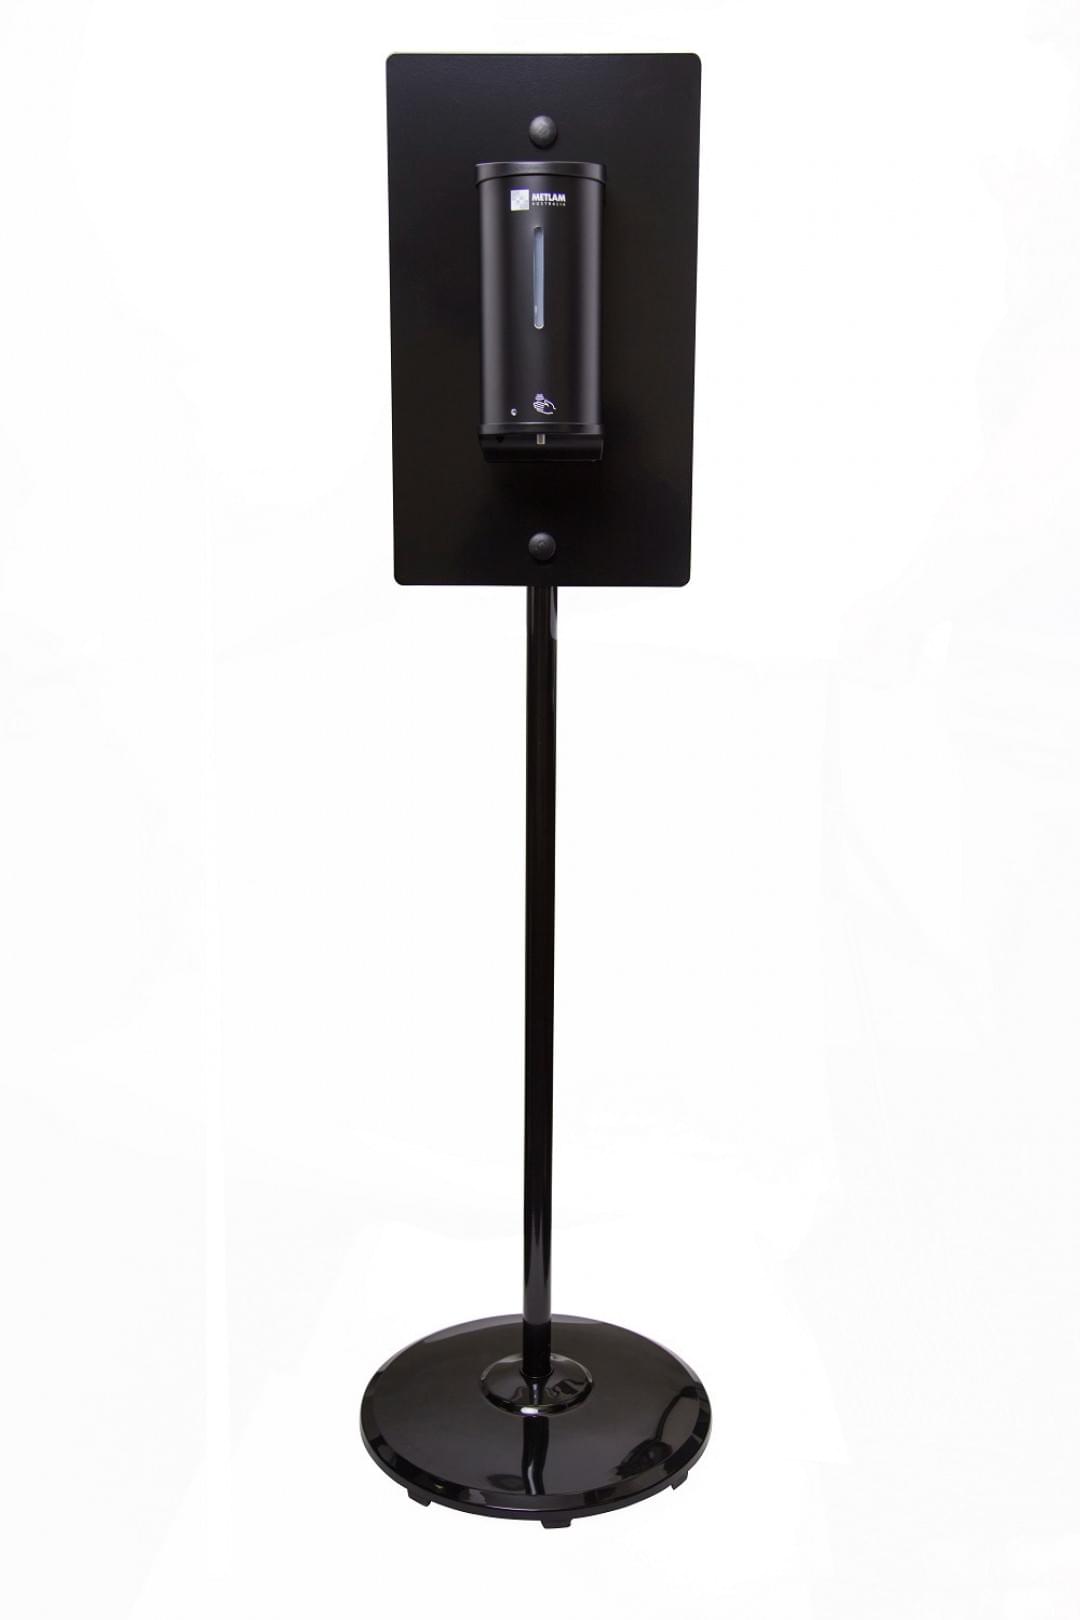 ML_HYGSTATION_BLK_BLK Hygiene Station -Black Stand & Sanitiser Dispenser Kit from METLAM